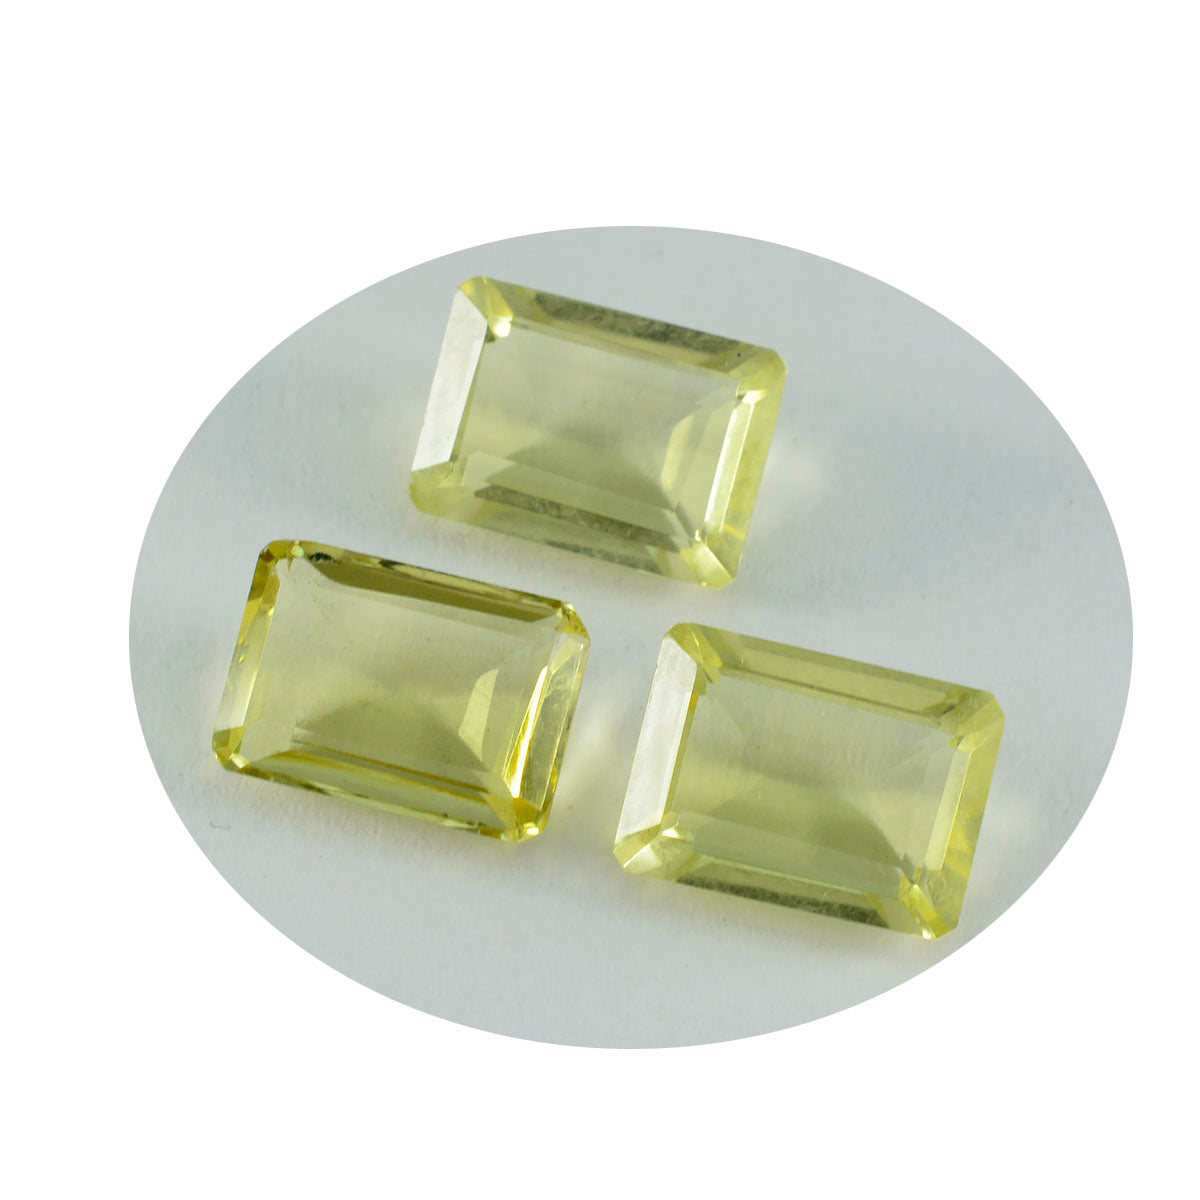 Riyogems 1PC geel citroenkwarts gefacetteerd 10x14 mm achthoekige vorm mooie kwaliteit losse edelsteen